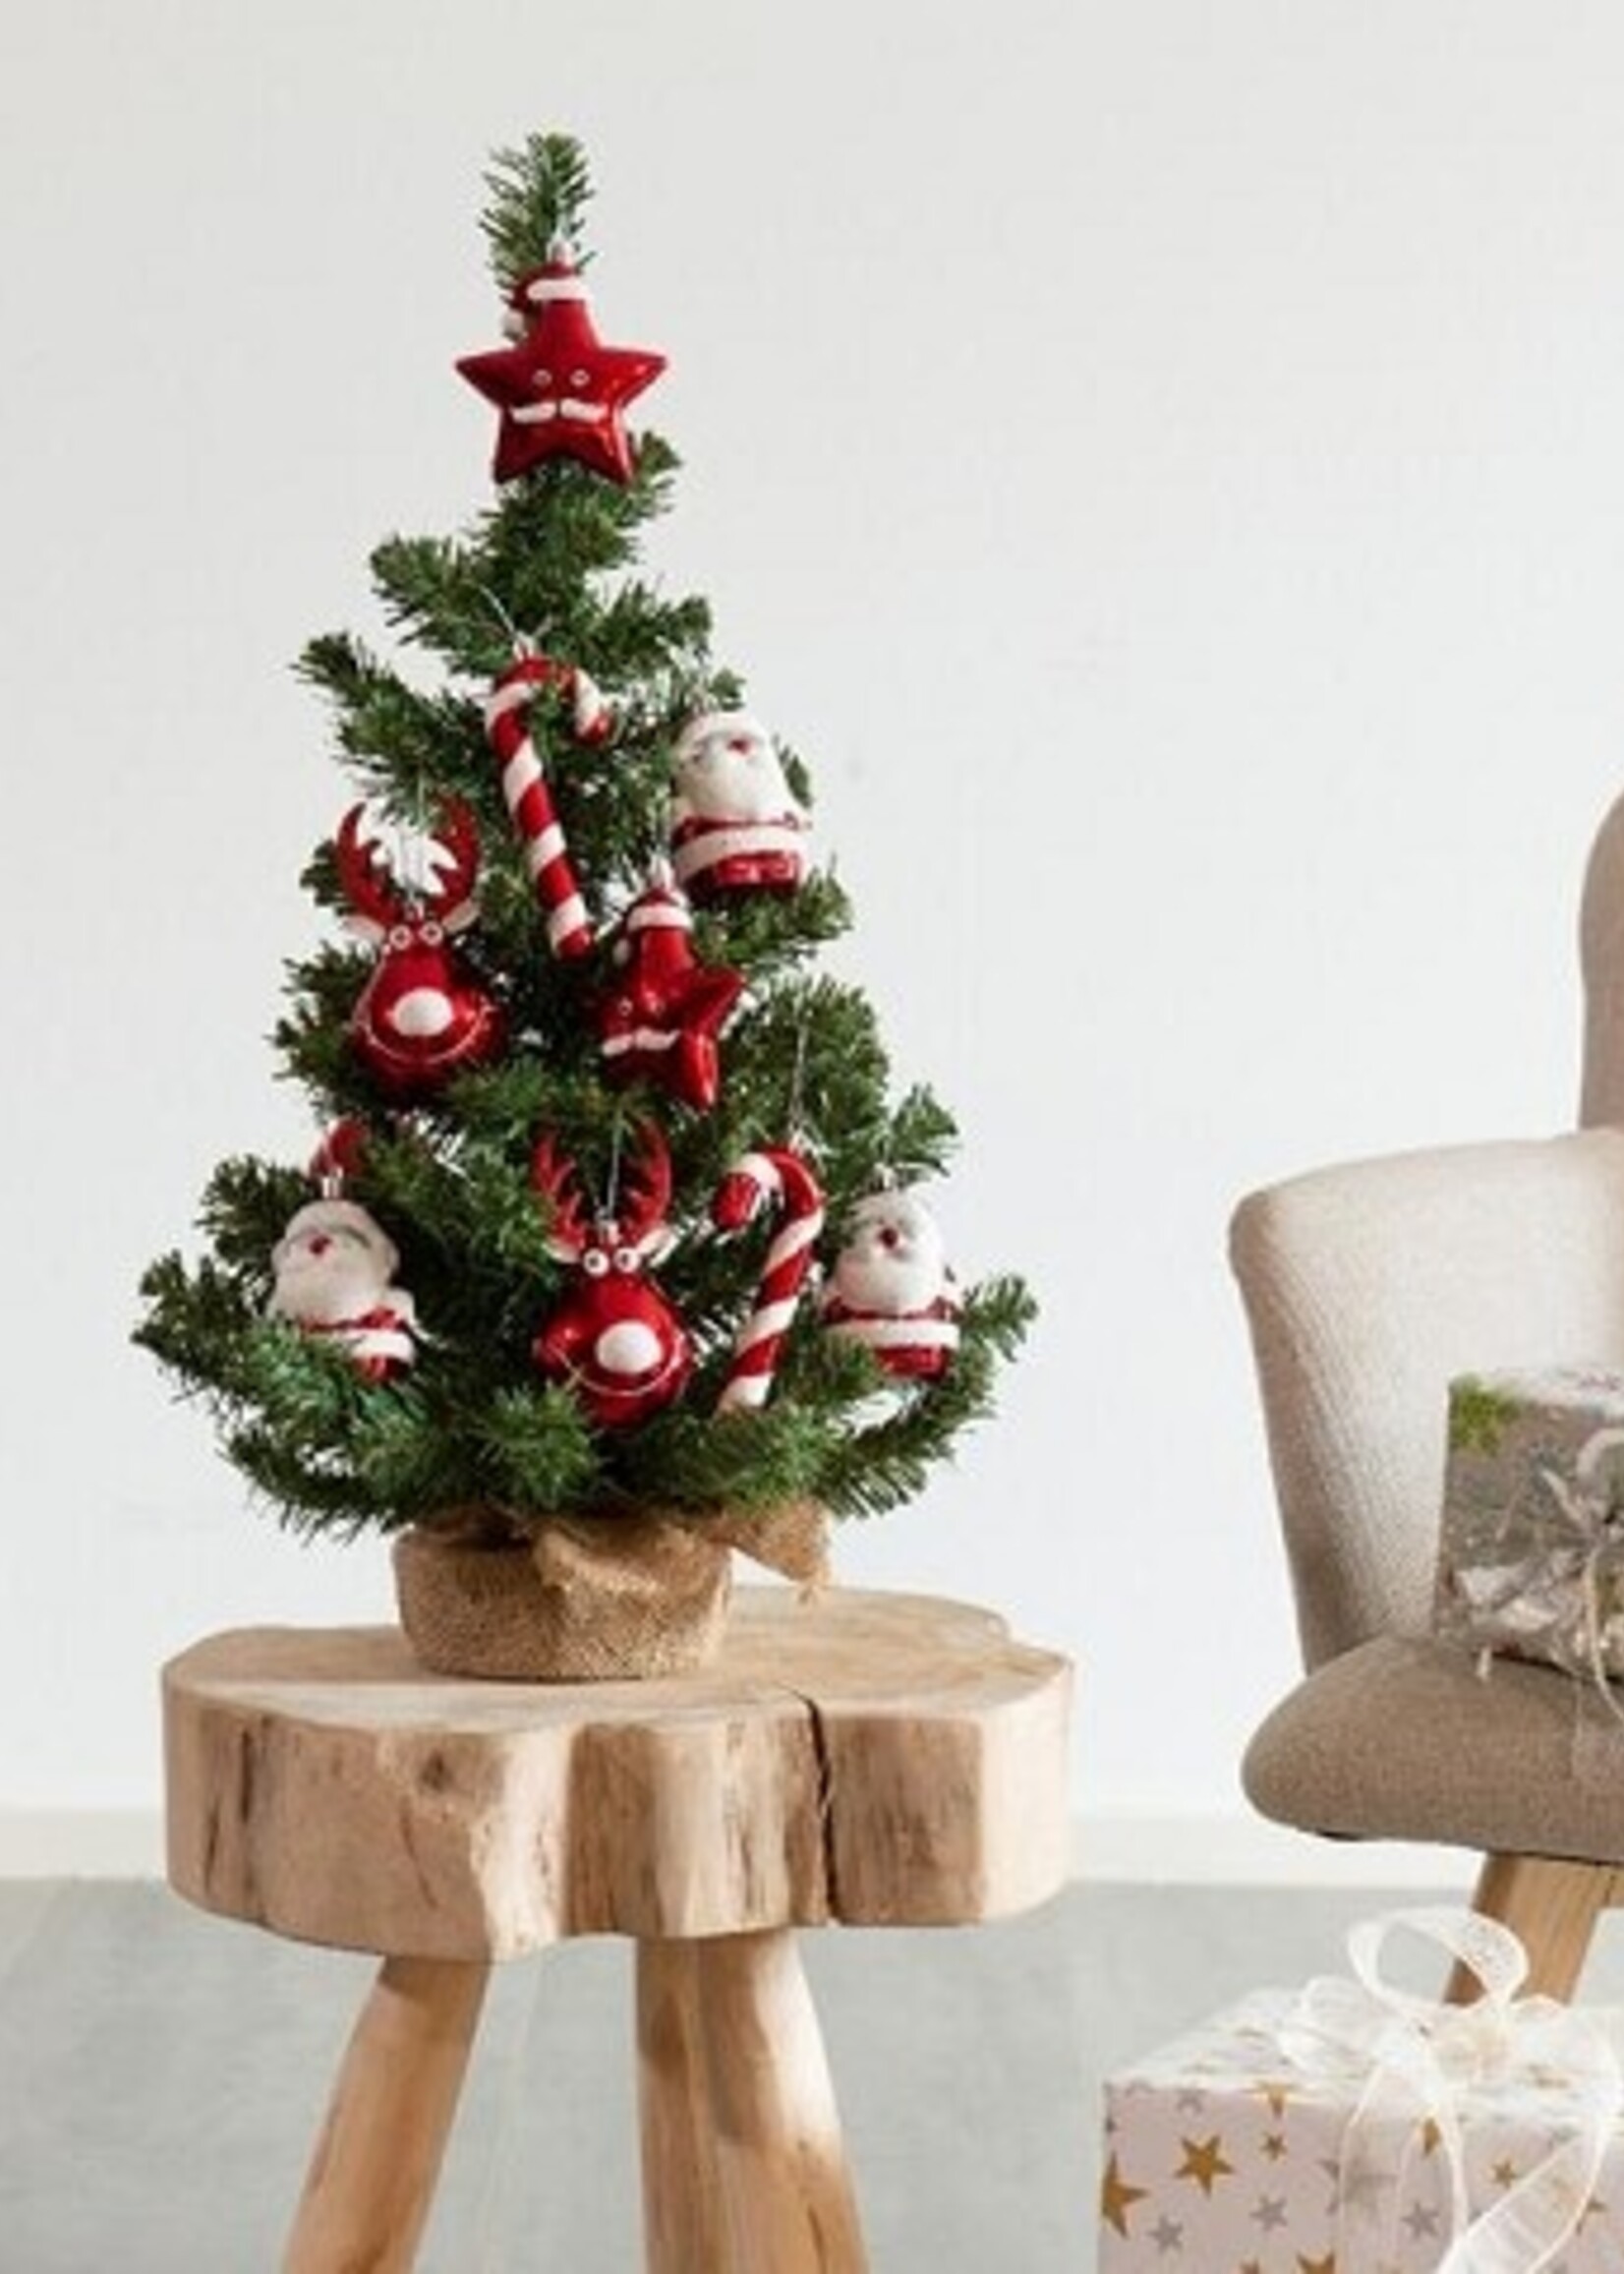 Everlands kunststof kerstboom inclusief decoratie kerstrood/wit dia35cm x 60cm